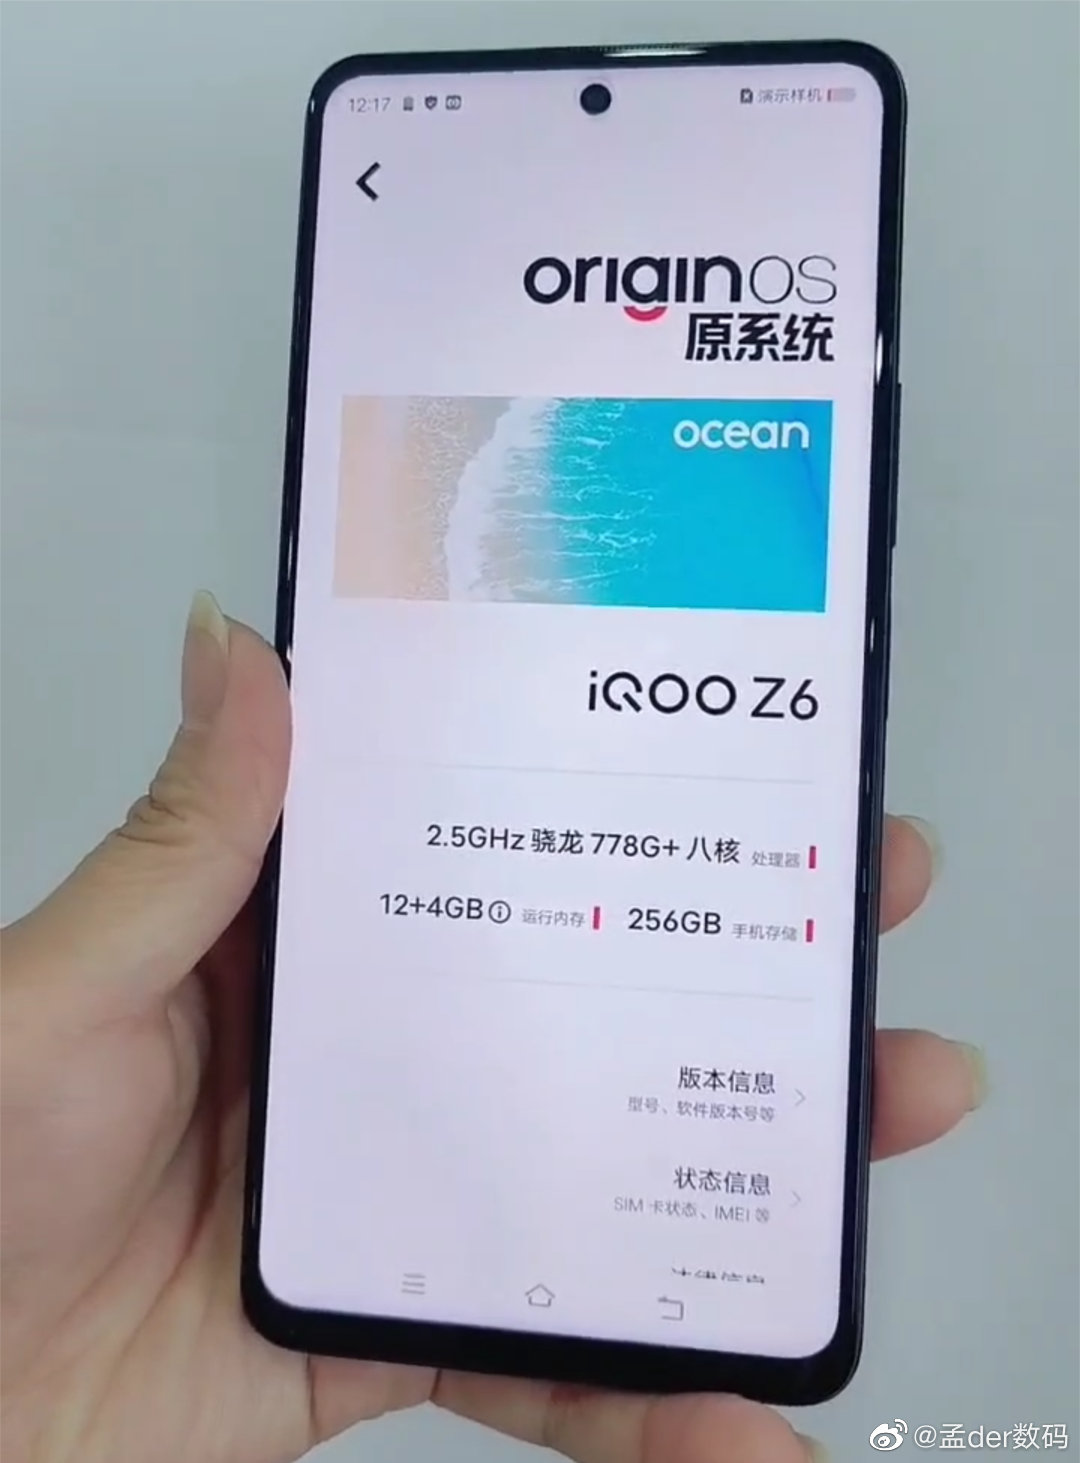 IQOO Z6 5G cena specyfikacja